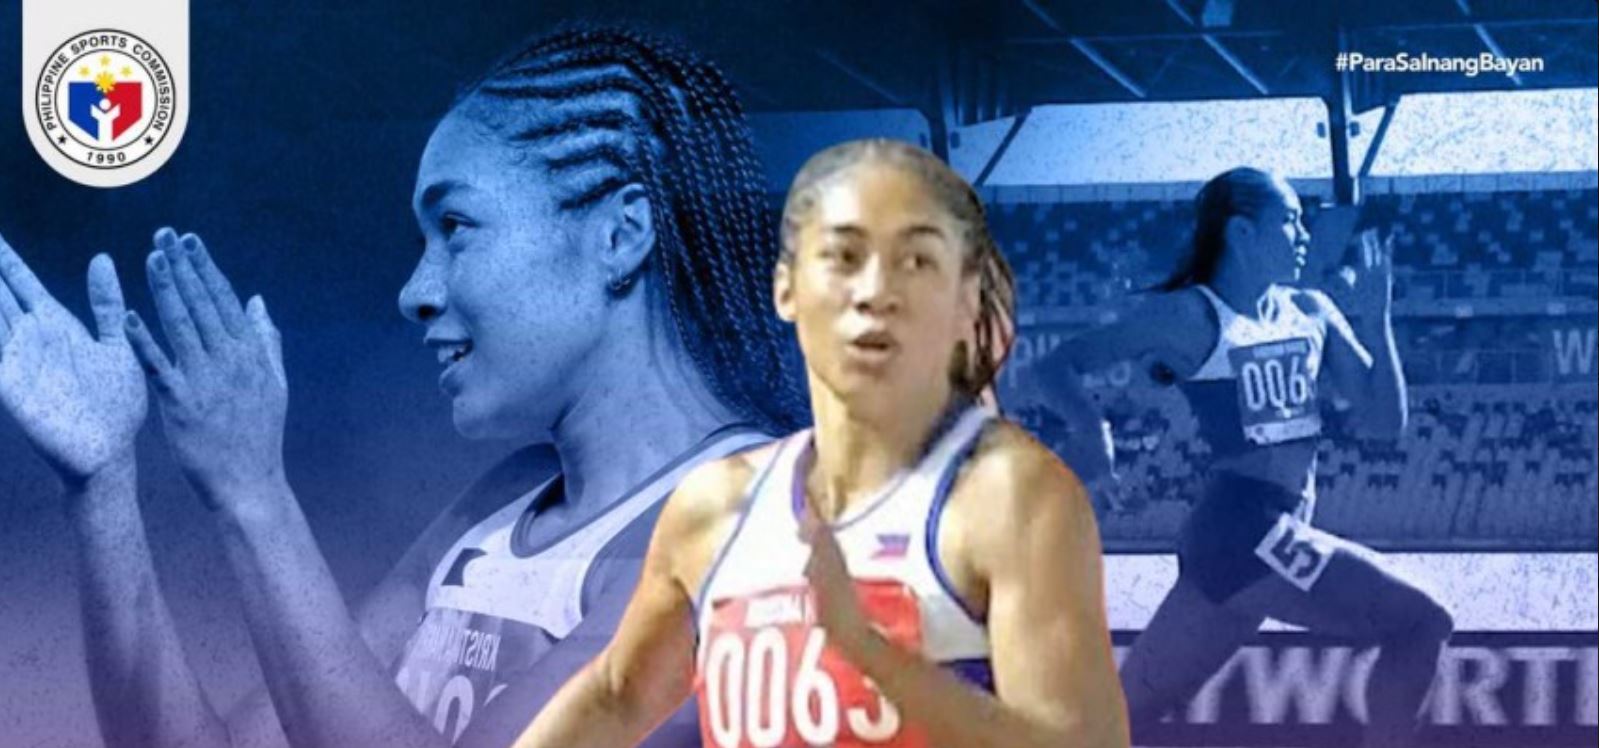 Filipino sprinter Kristina Knott